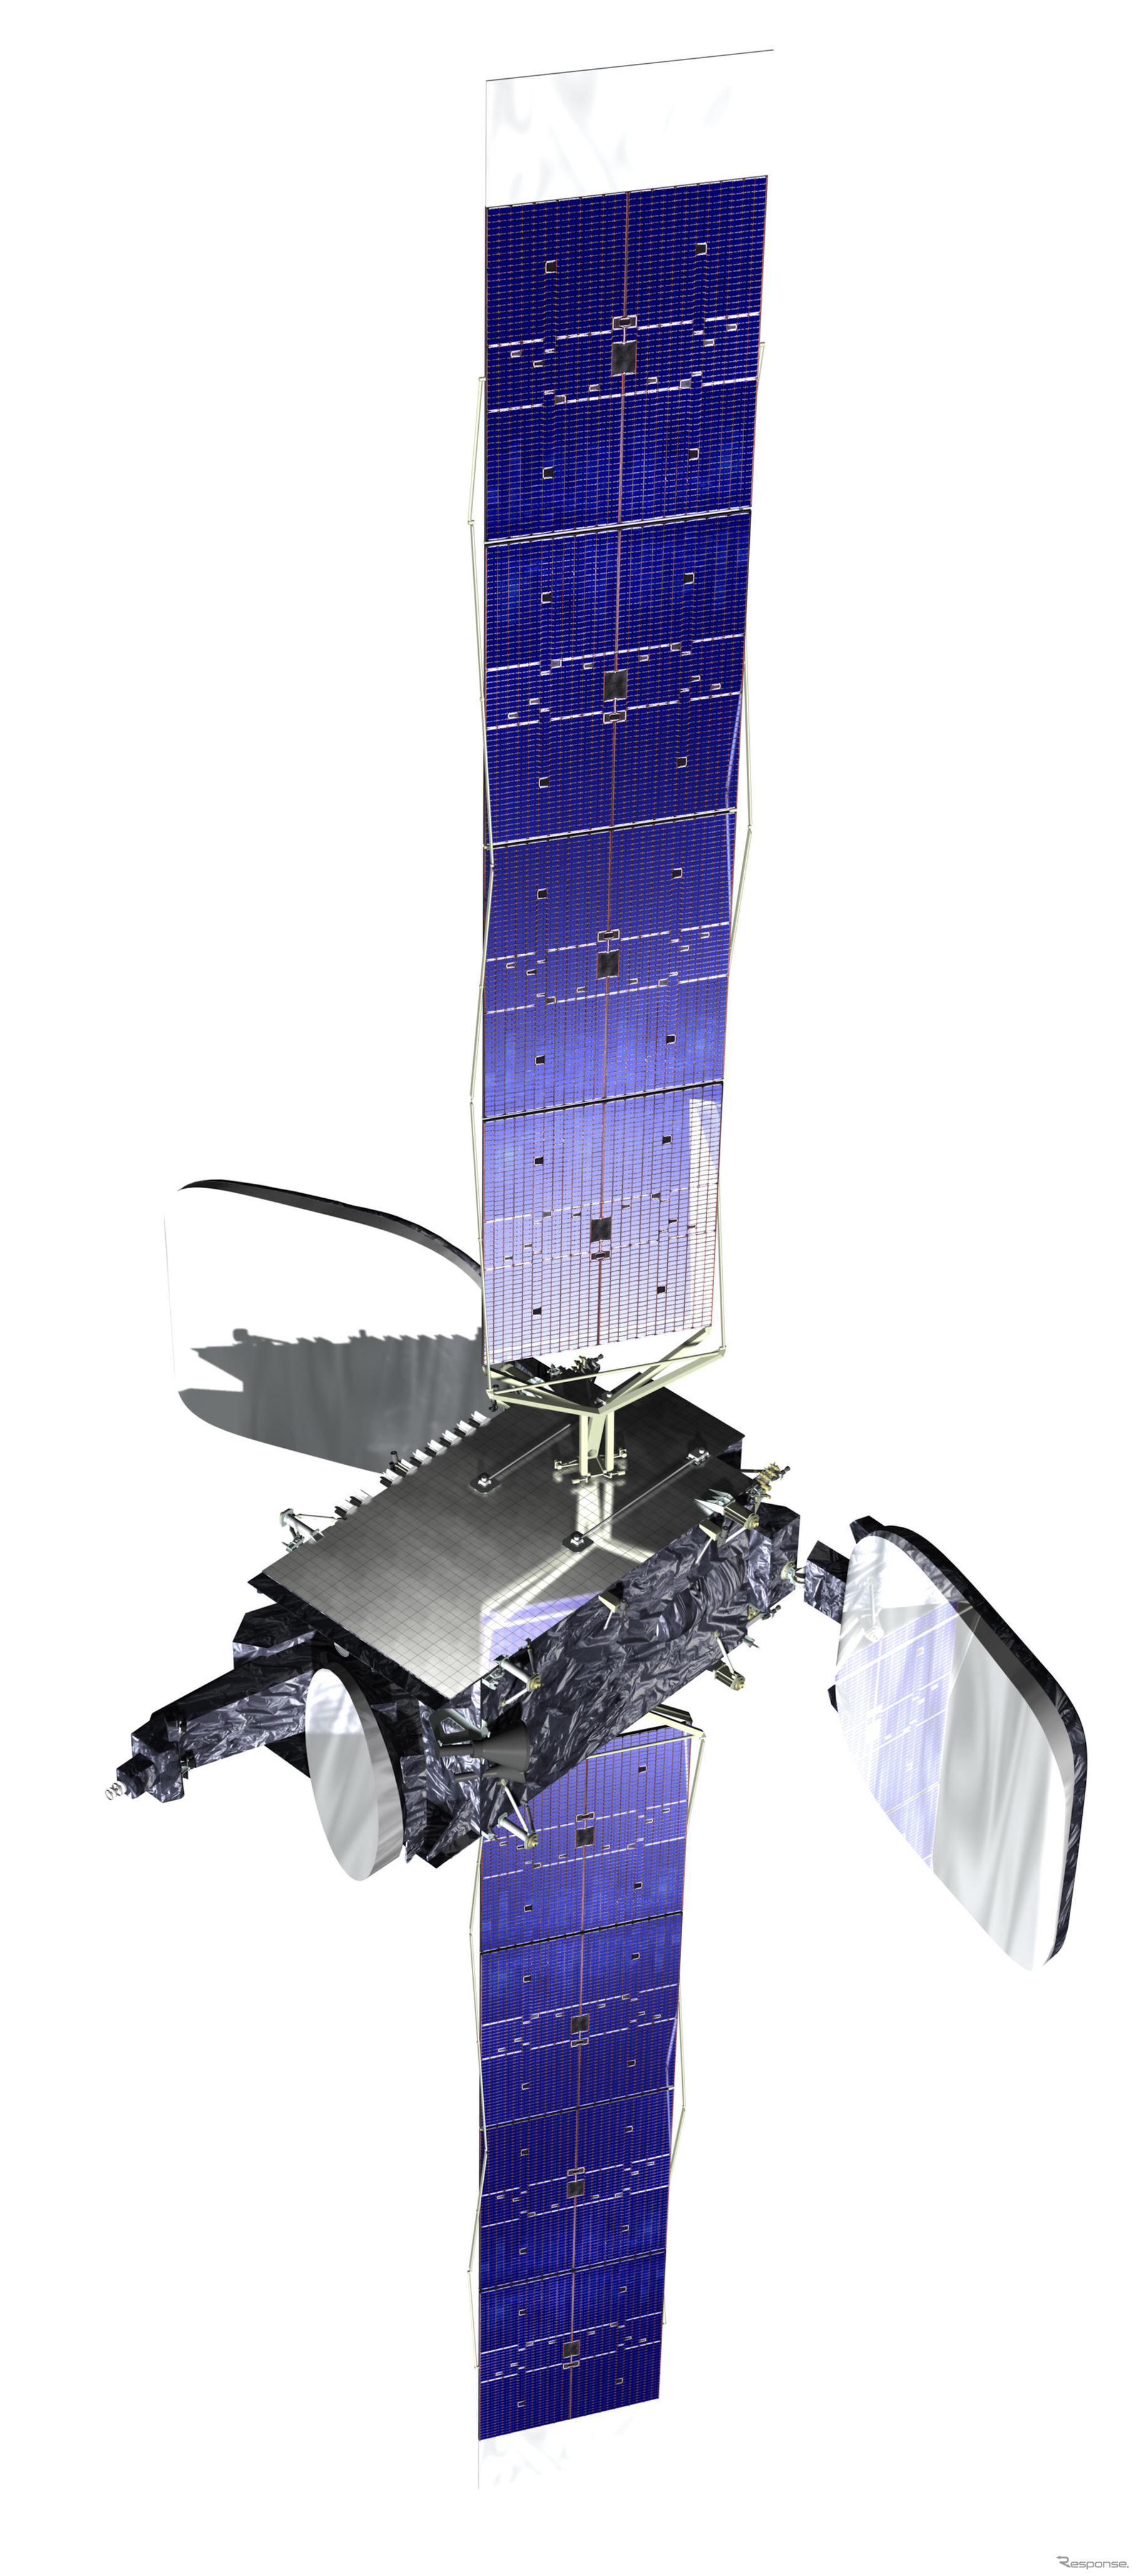 SES-8通信衛星